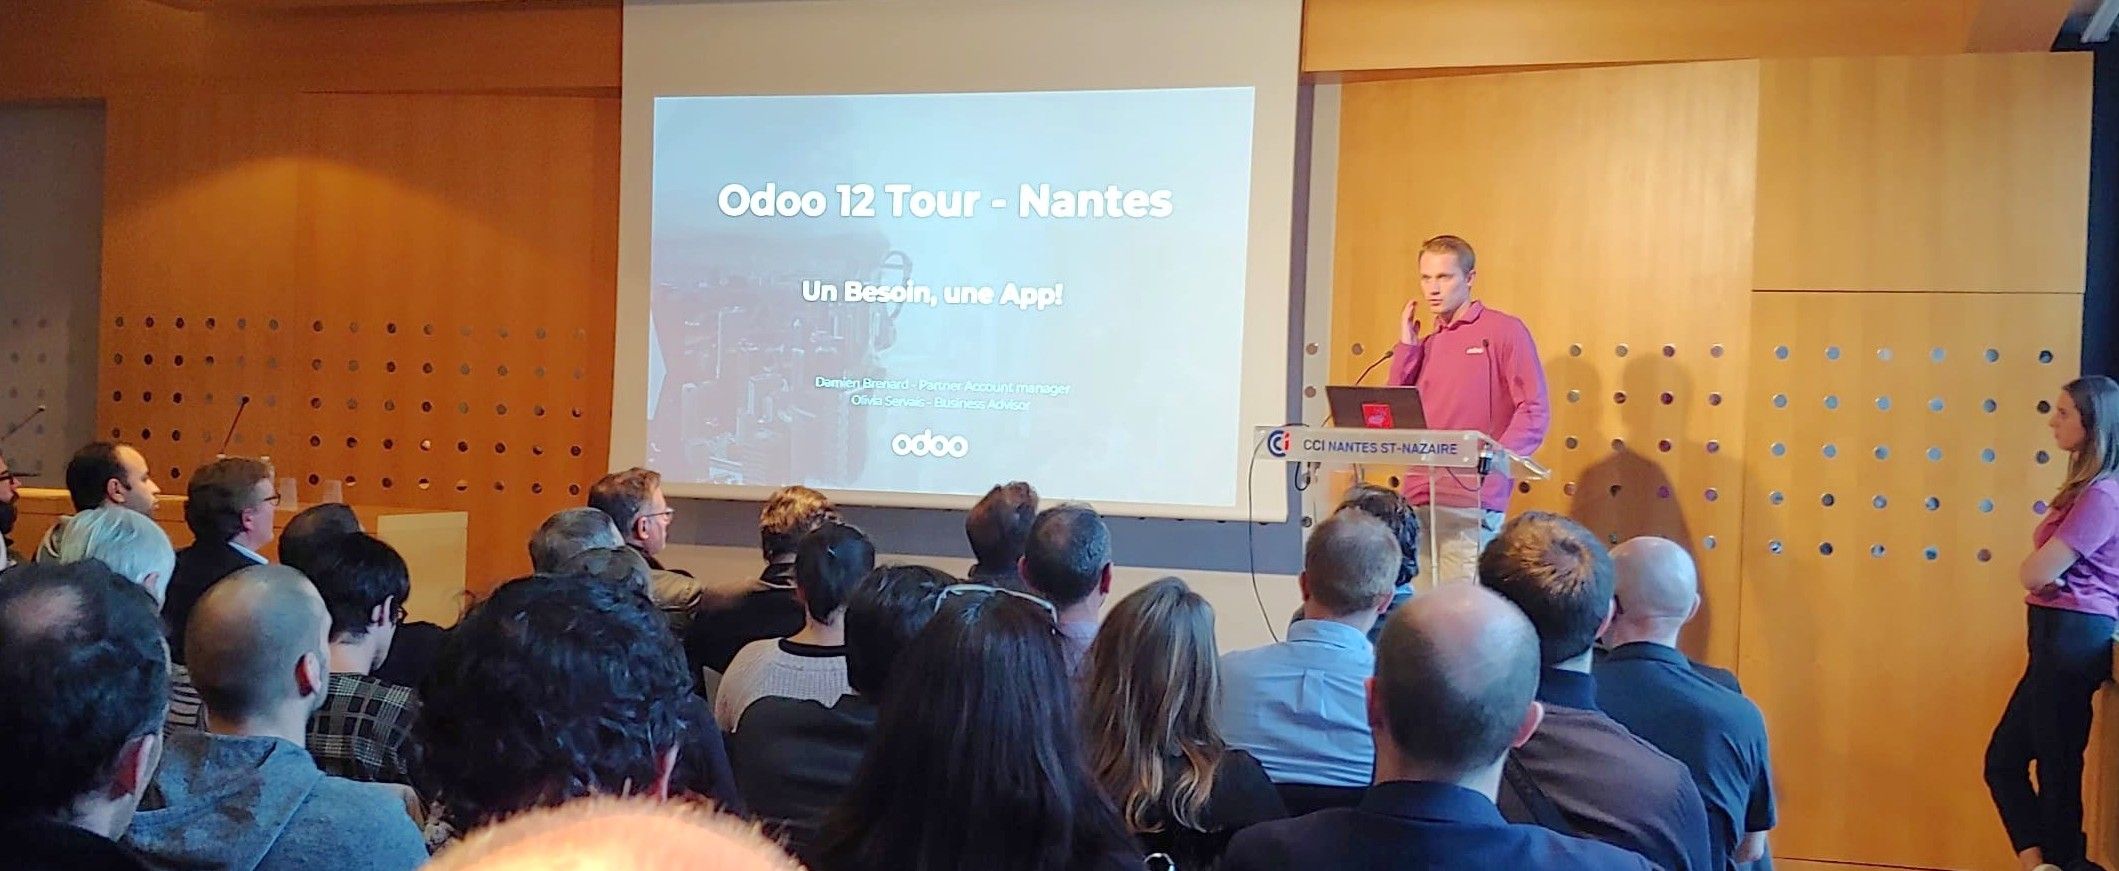 Odoo tour Nantes